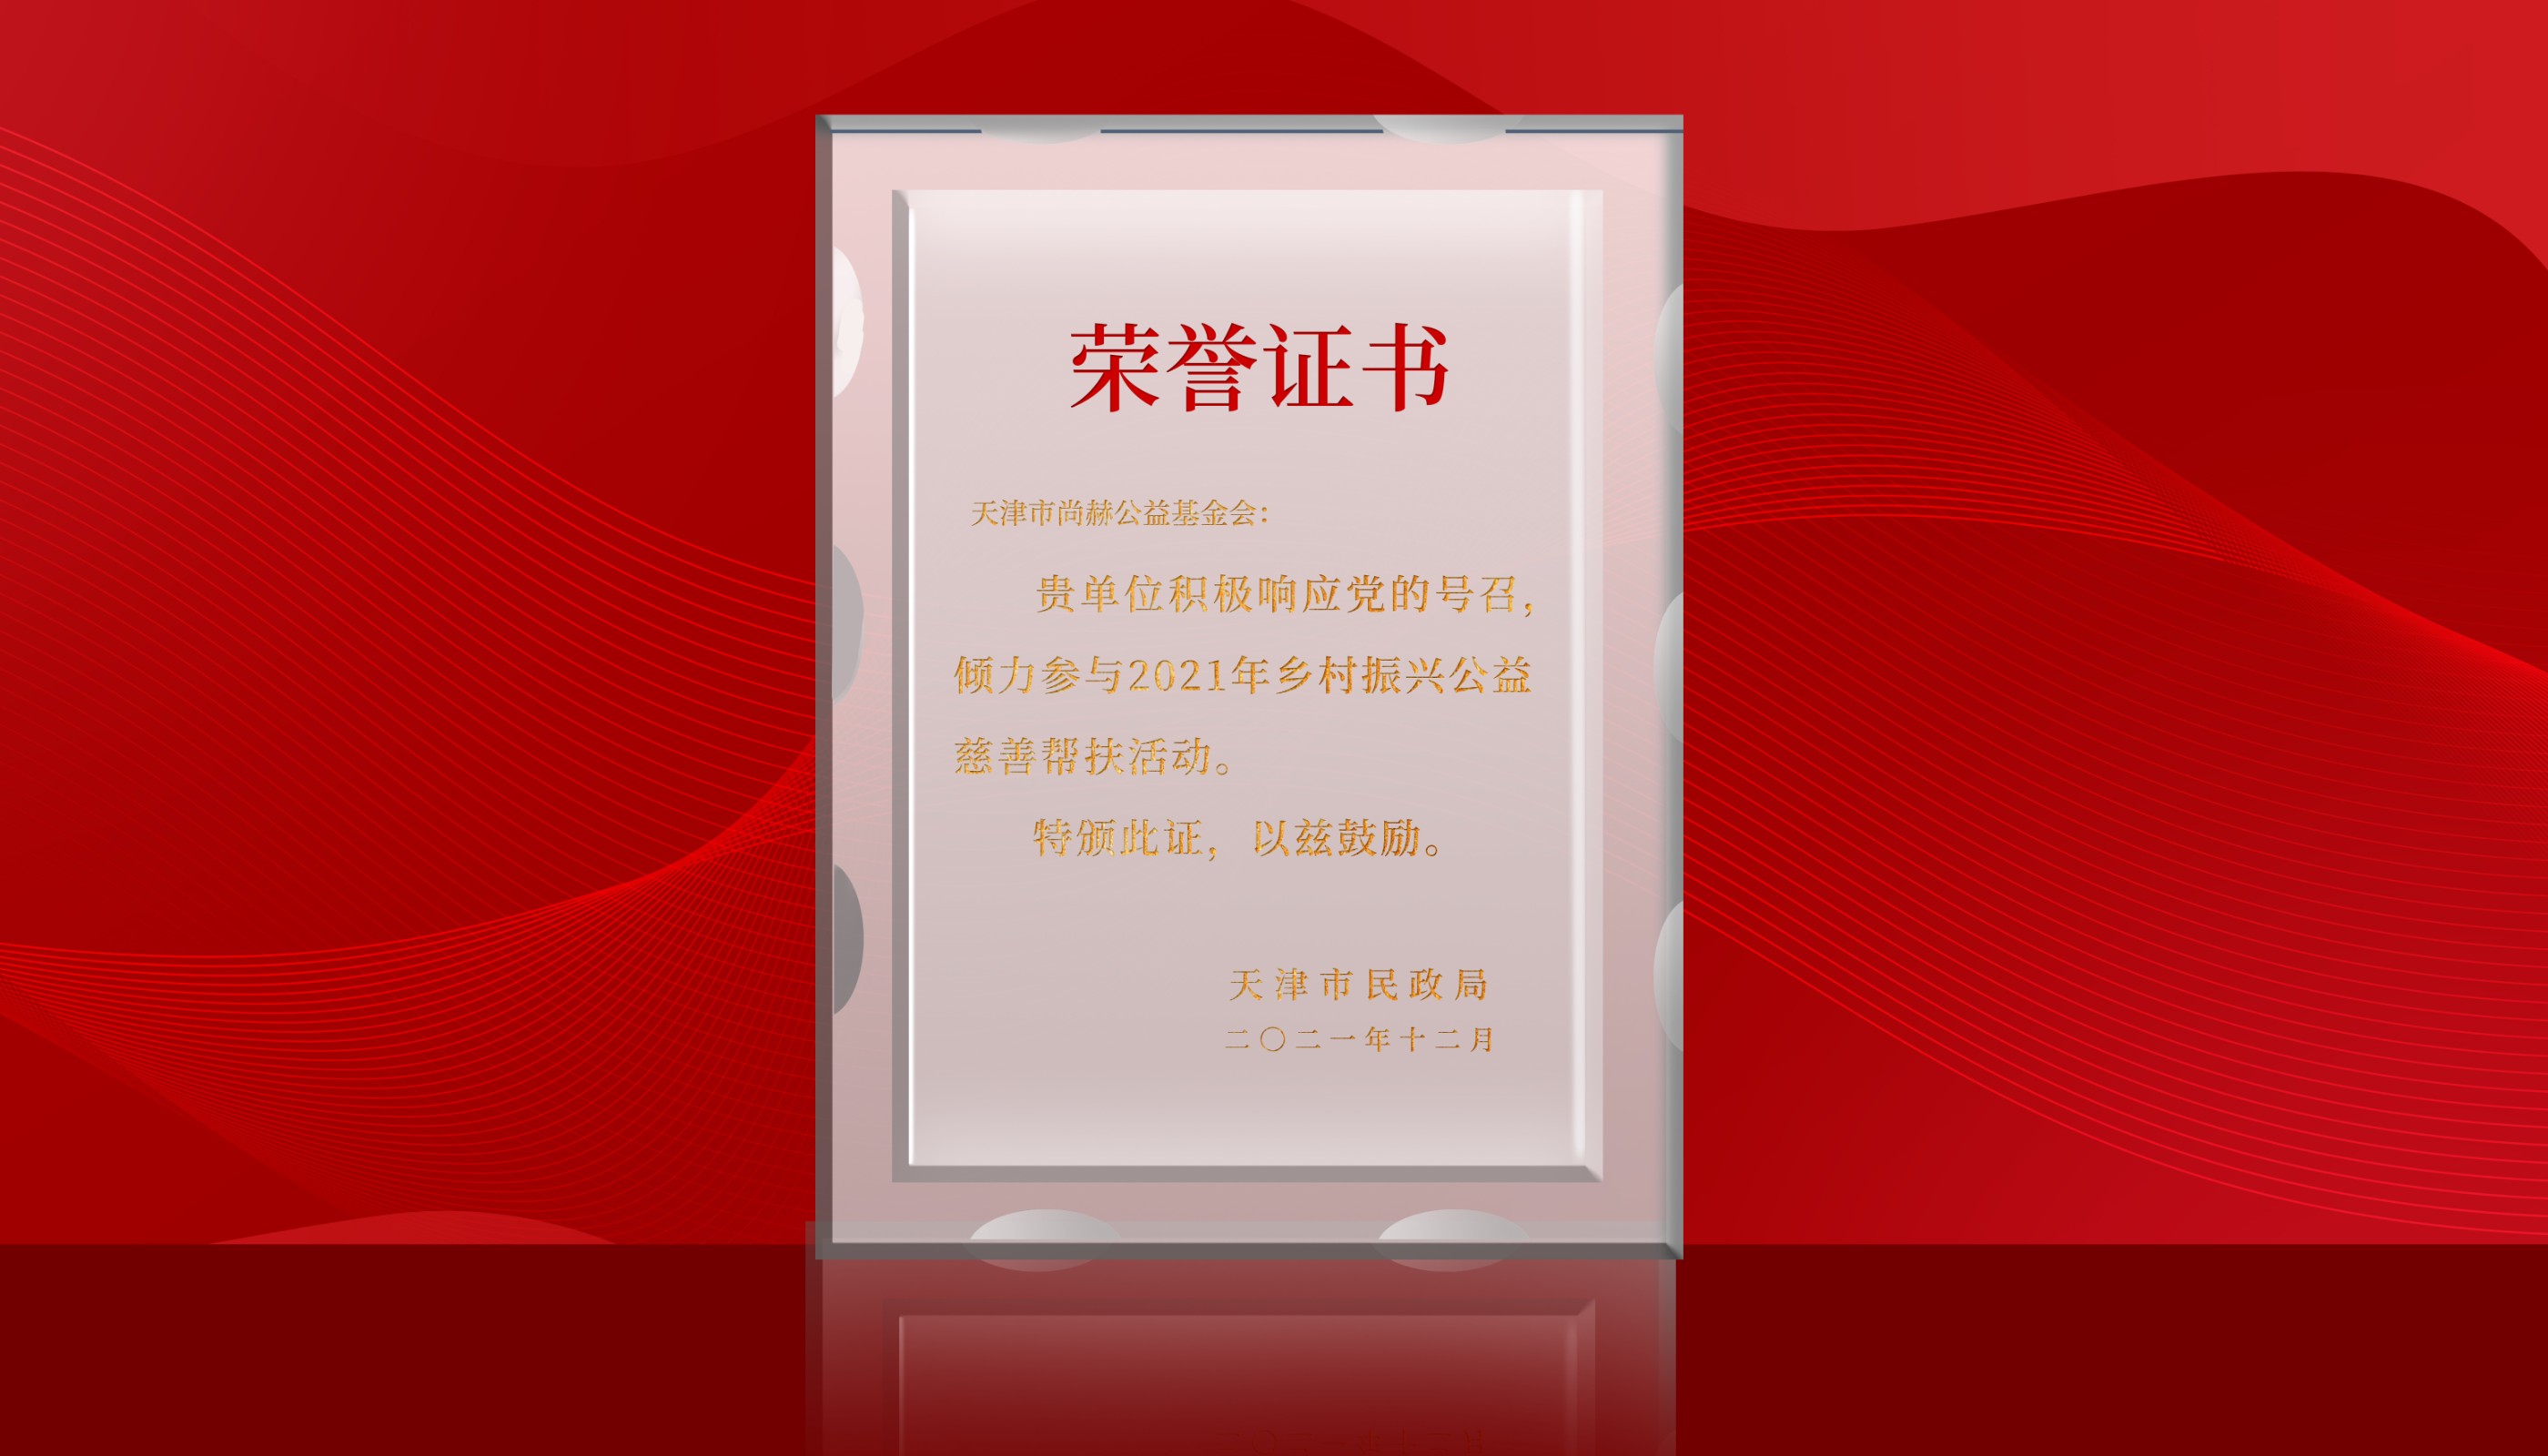 7月-尚赫公益基金会荣获天津市民政局颁发的荣誉证书